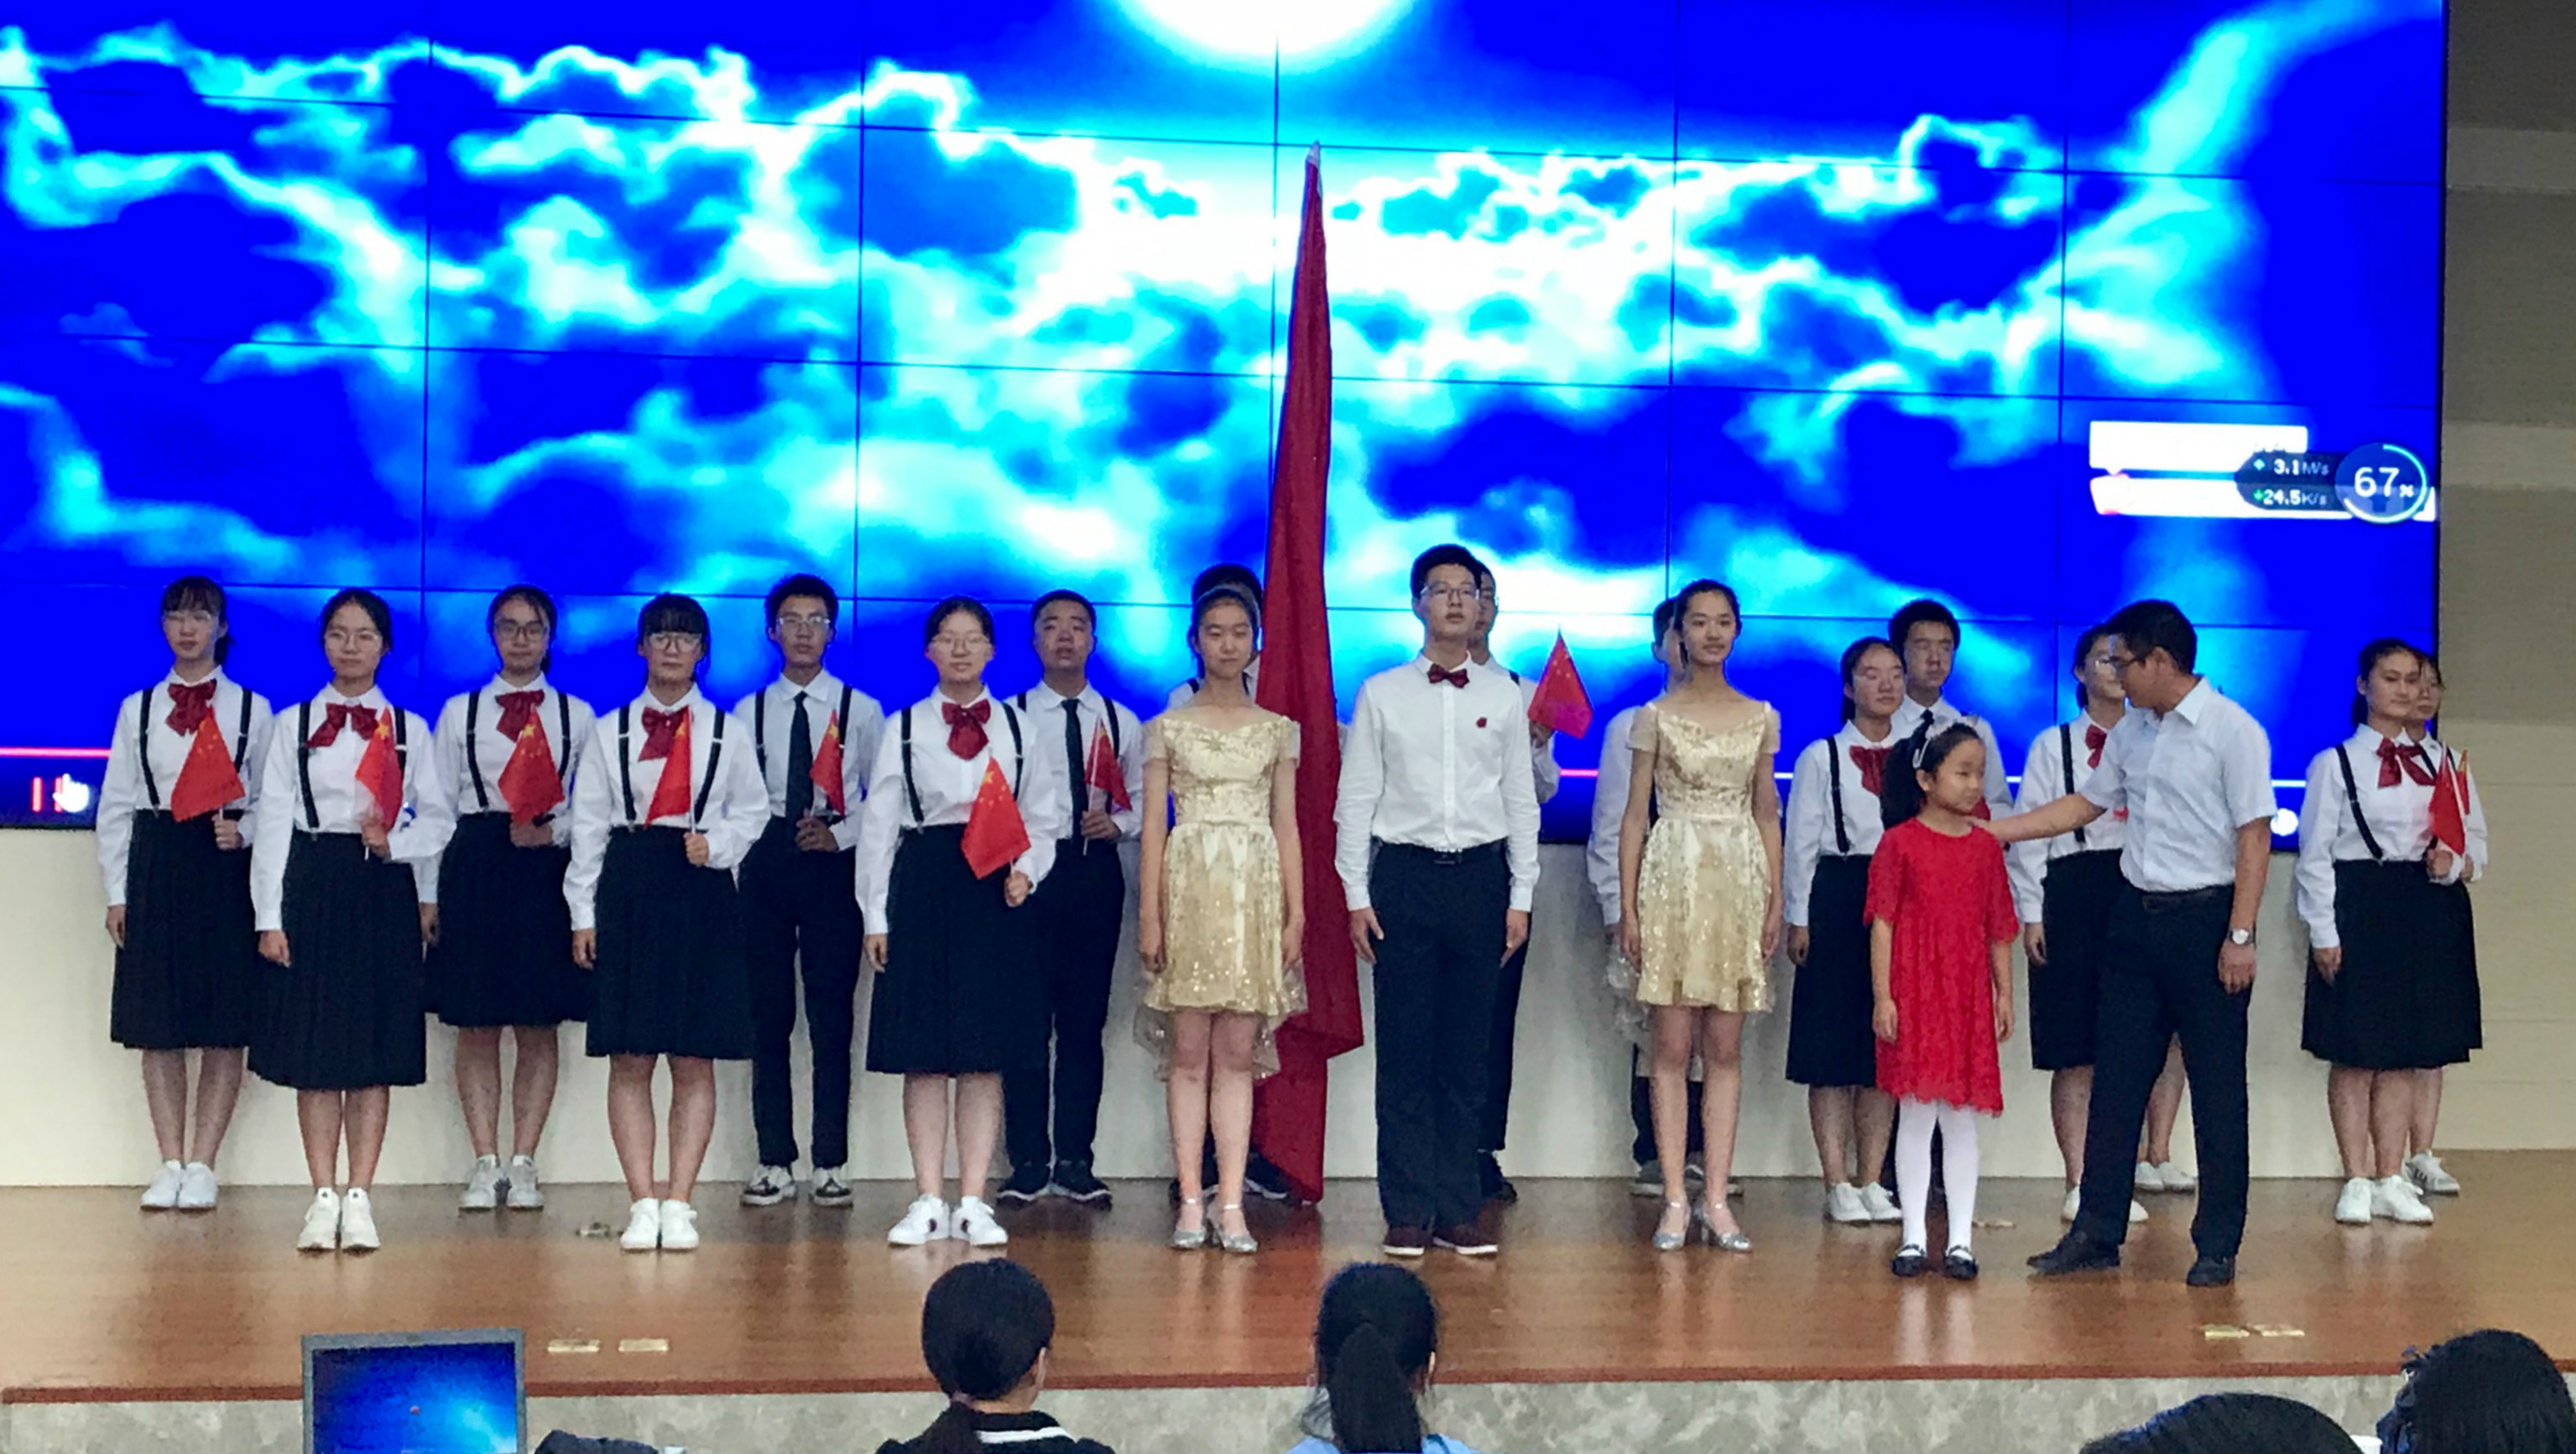 佛山三中初中部勇夺2017年禅城区中小学生啦啦操比赛冠军